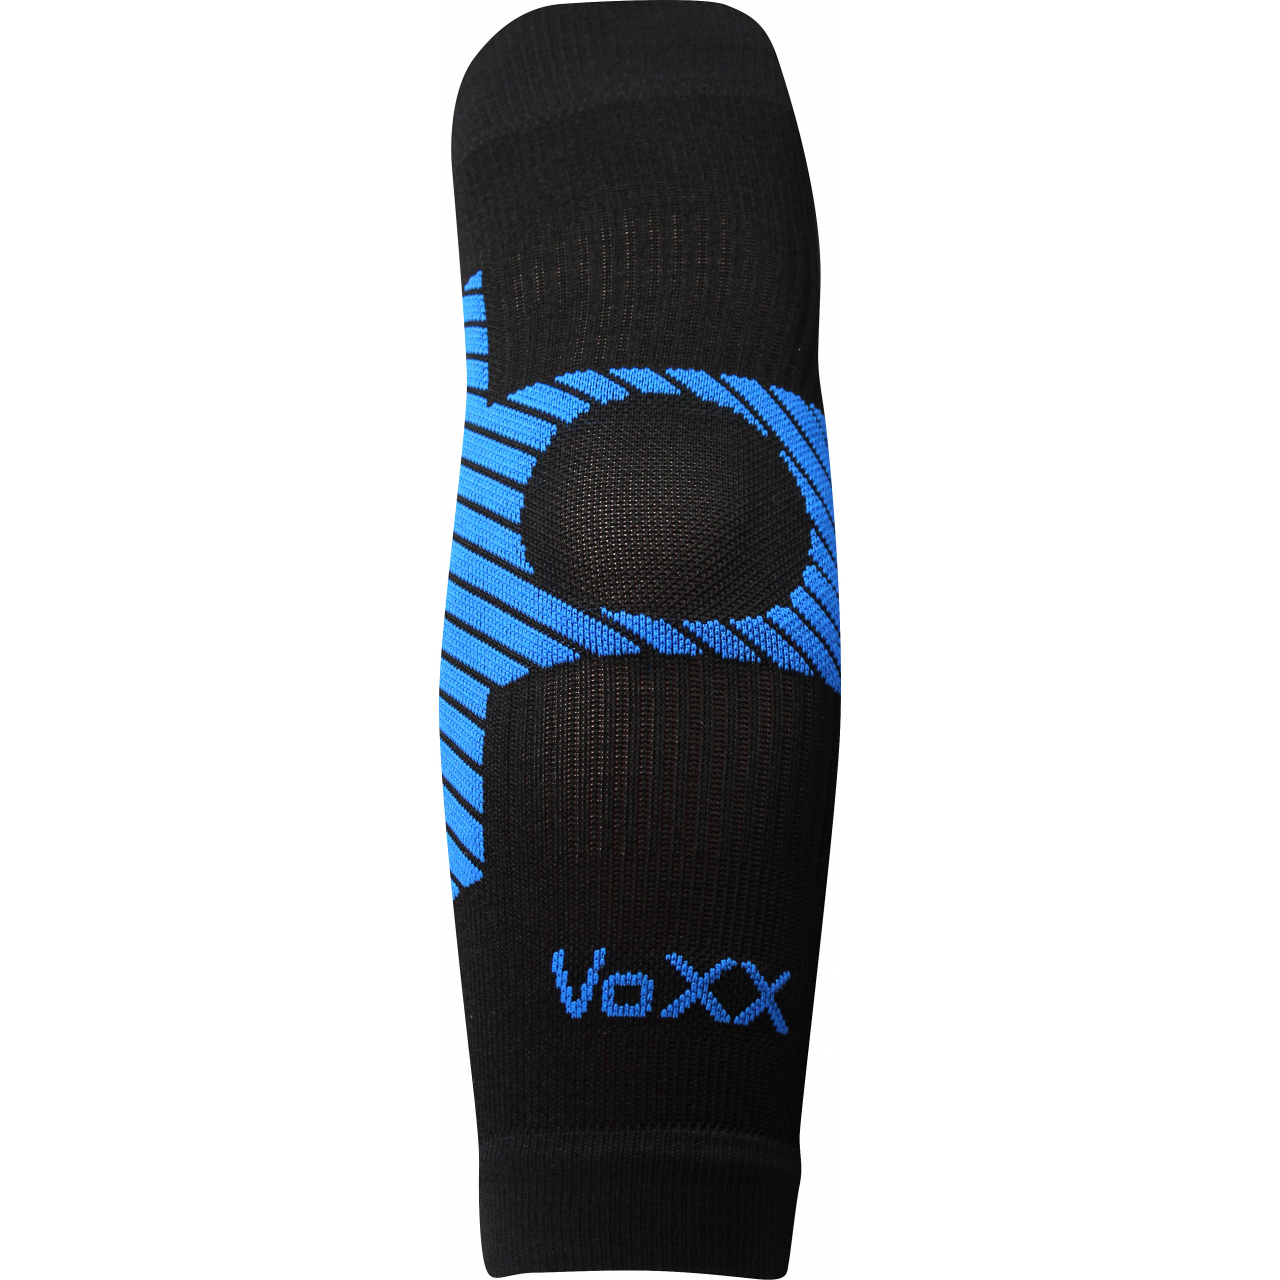 Návlek kompresní Voxx Protect loket - černý-modrý, L/XL